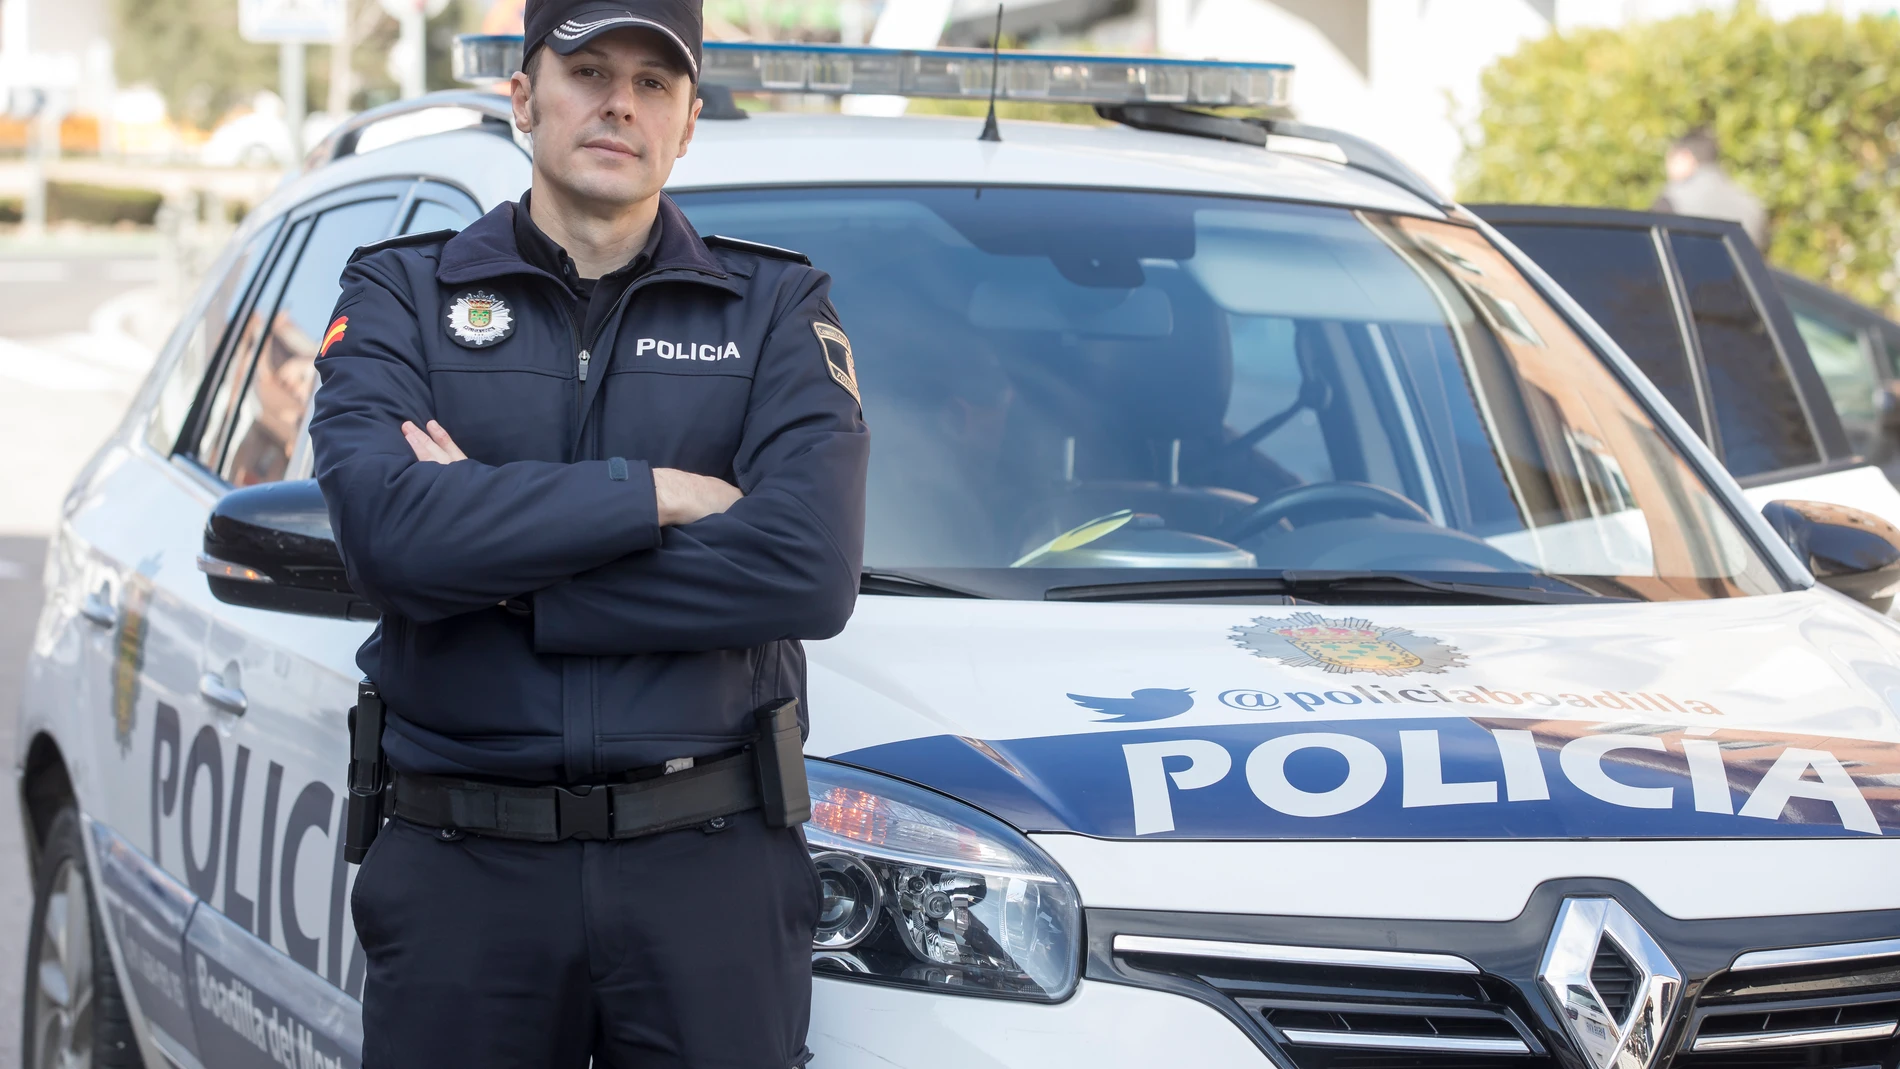 Luis Rodrigo Fernández-Pinedo, jefe de la Policía Local del municipio de Boadilla del Monte, es en quién recae la coordinación de la seguridad ciudadana